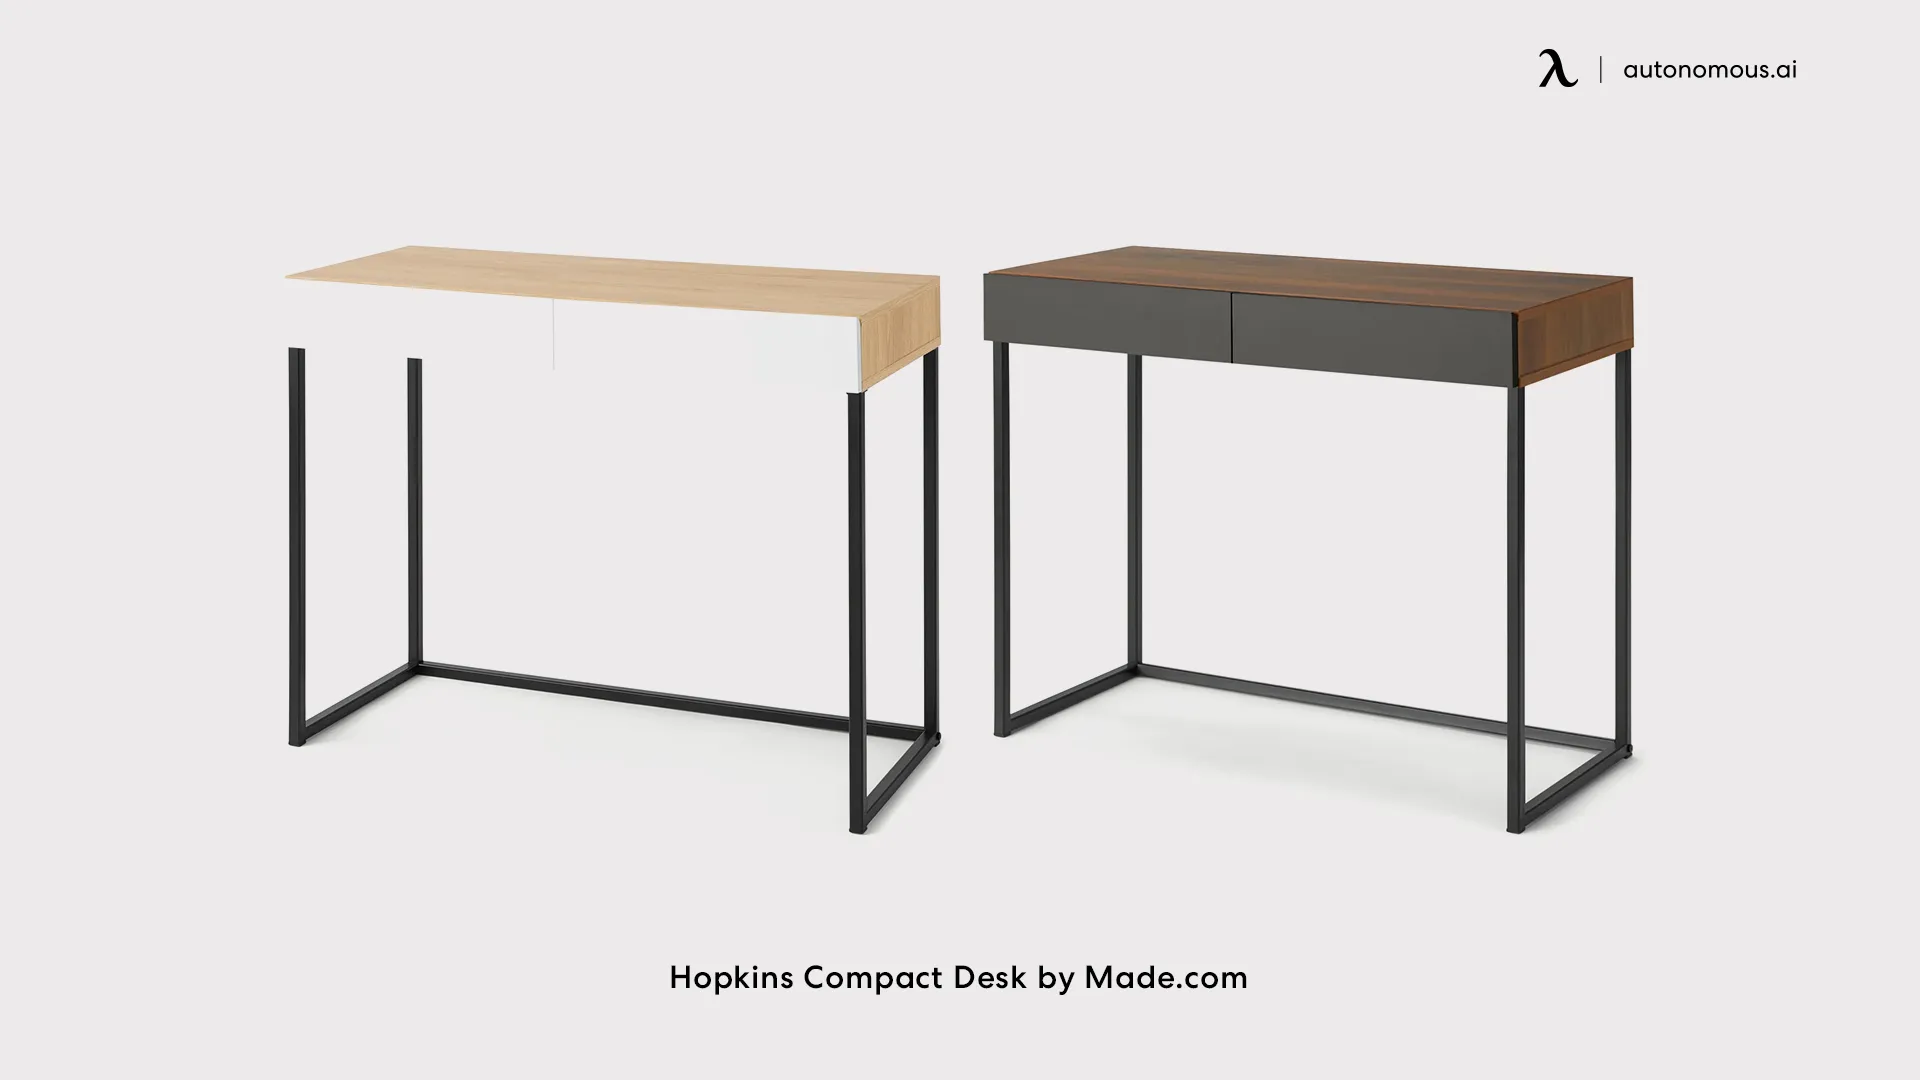 Hopkins Compact Desk by Made.com